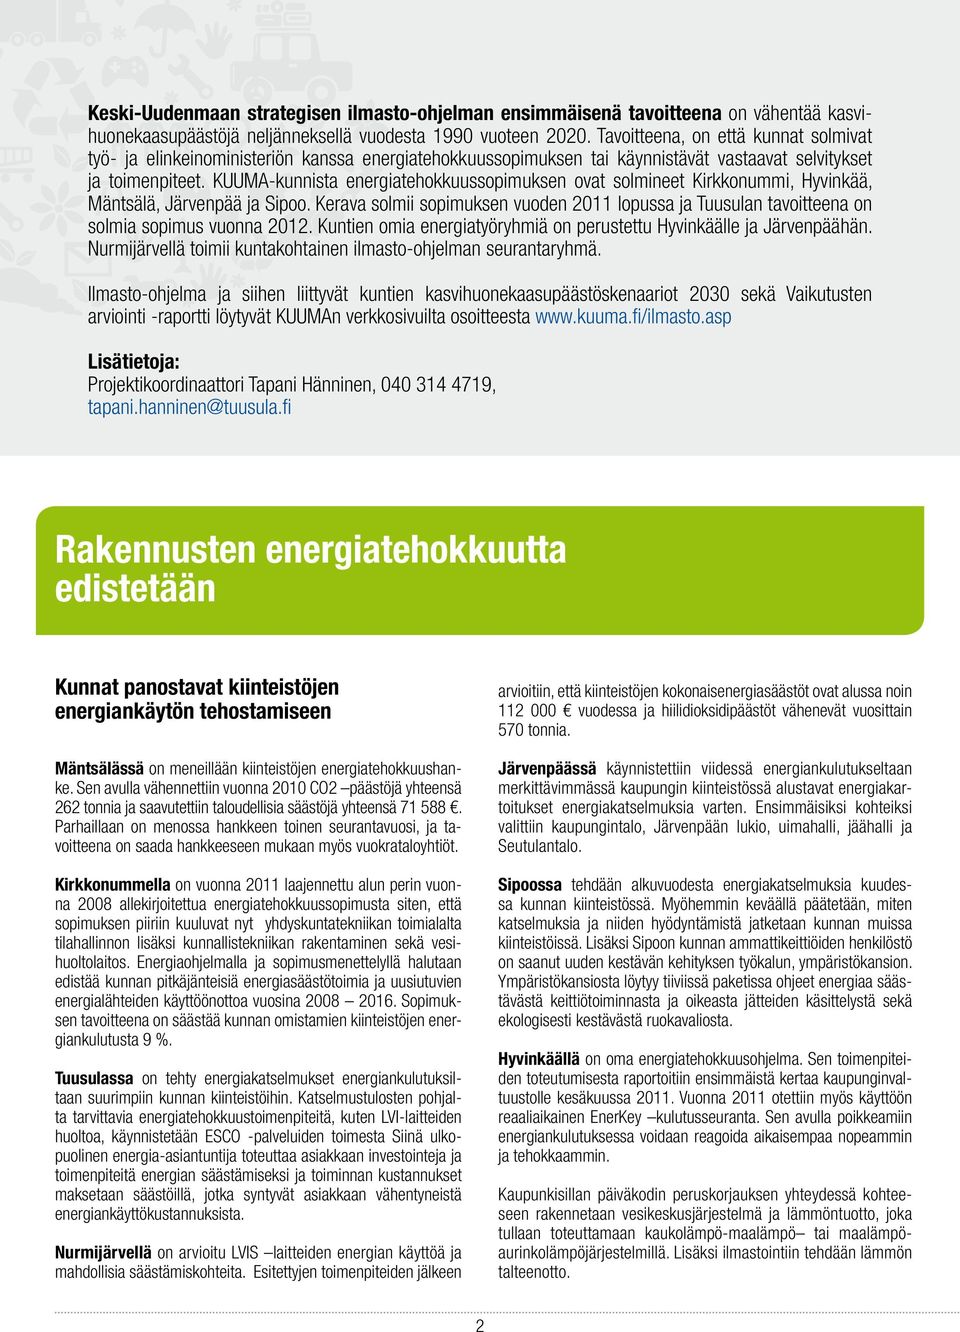 KUUMA-kunnista energiatehokkuussopimuksen ovat solmineet Kirkkonummi, Hyvinkää, Mäntsälä, Järvenpää ja Sipoo.